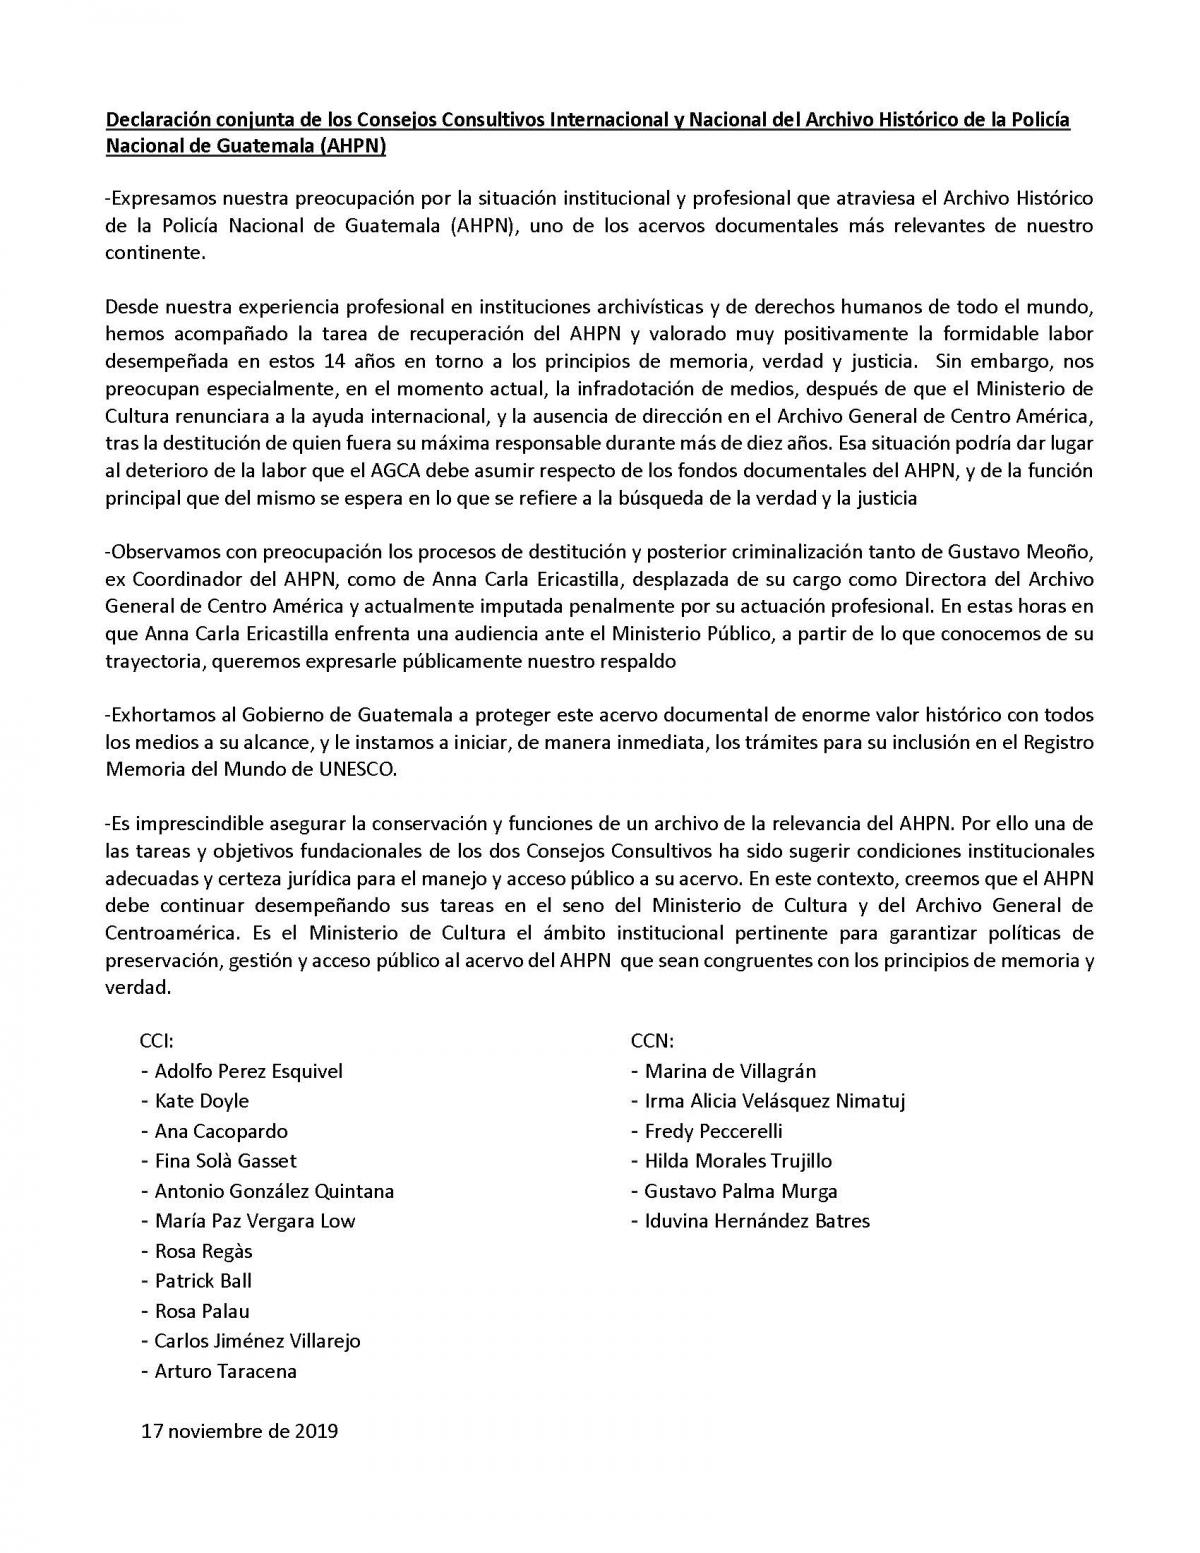 Declaración conjunta de los Consejos Consultivos Internacional y Nacional del Archivo Histórico de la Policía Nacional de Guatemala